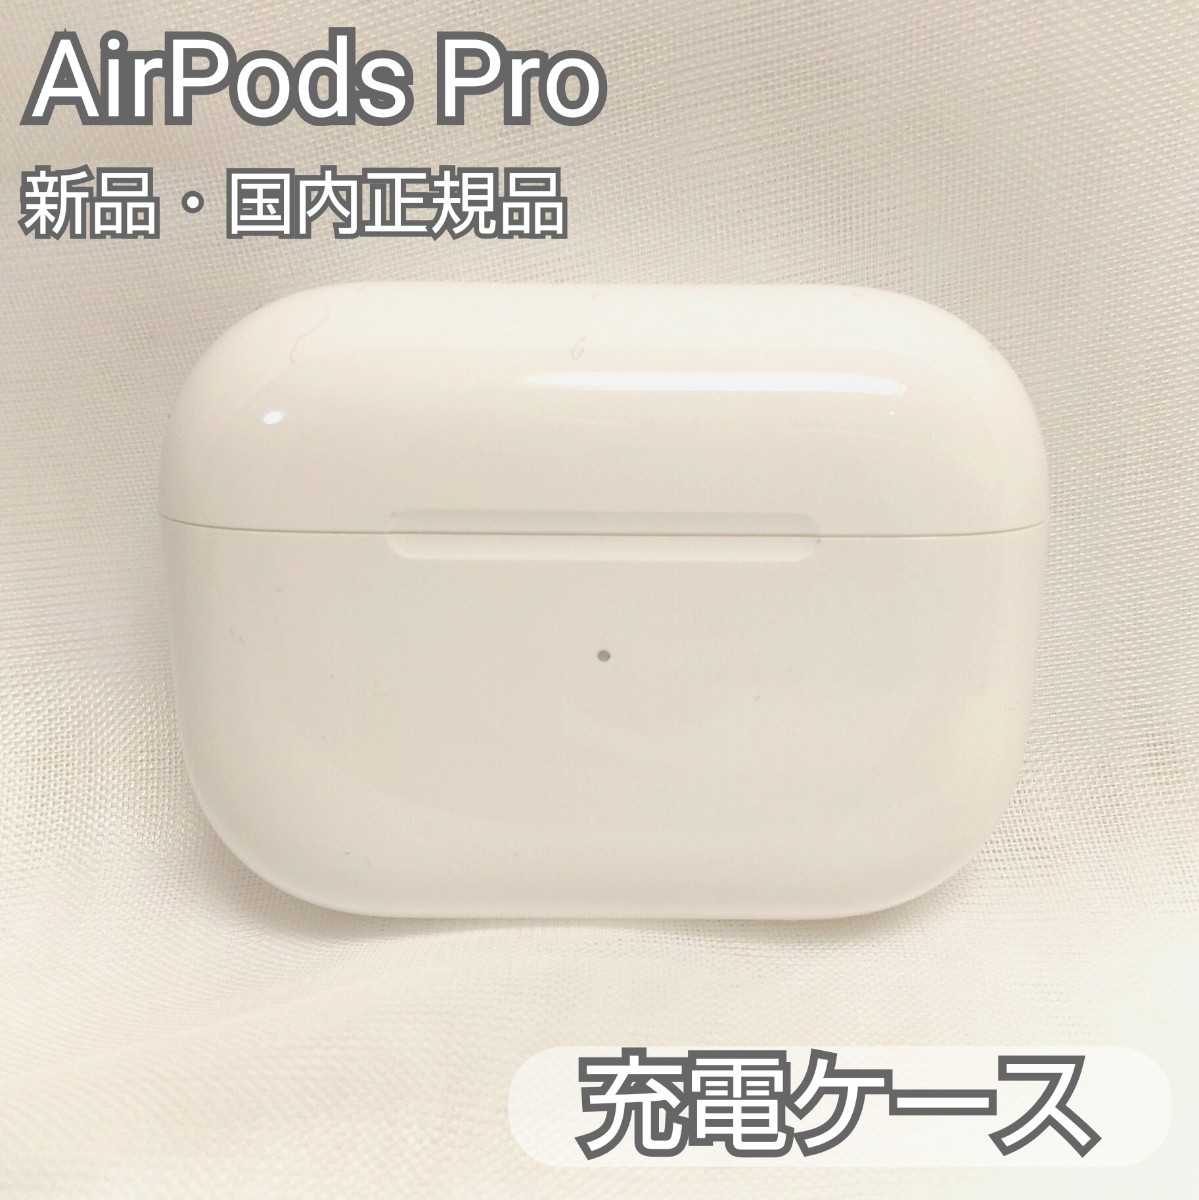 【新品】AirPodsPro 純正品 充電ケースのみ